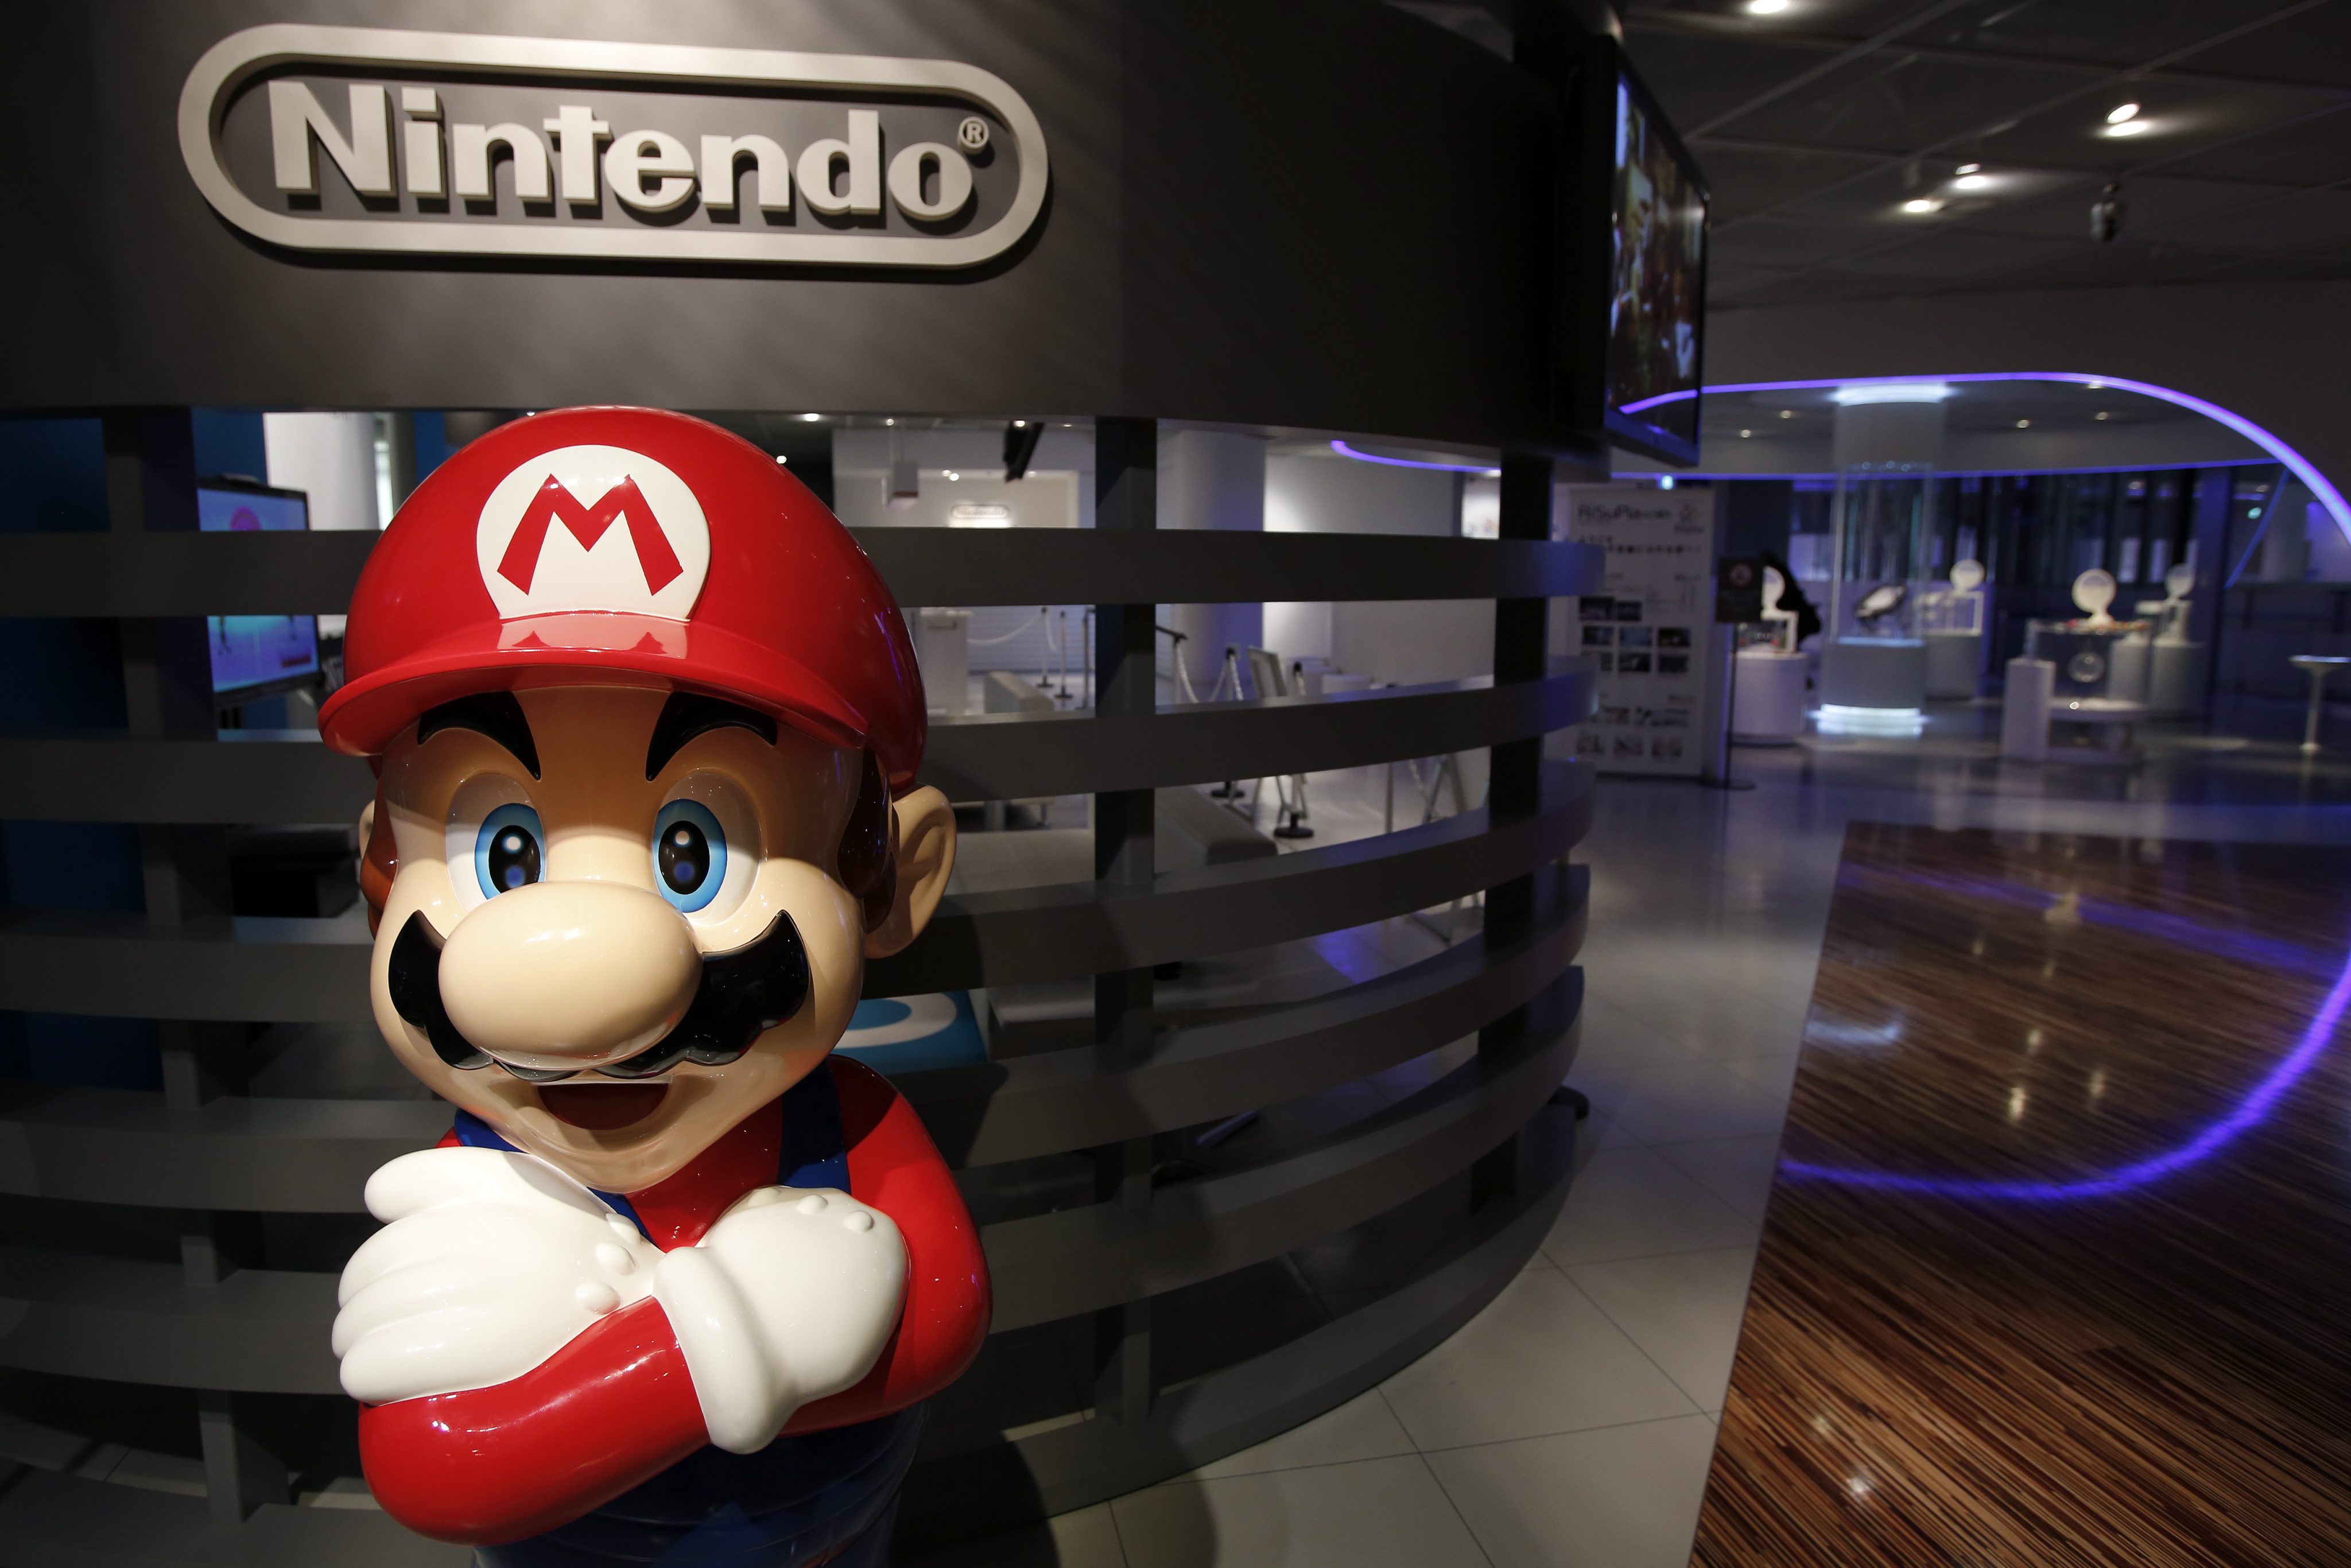 Nintendo няма право да ограничава достъпа до филми, видео и MP3 файлове от други доставчици